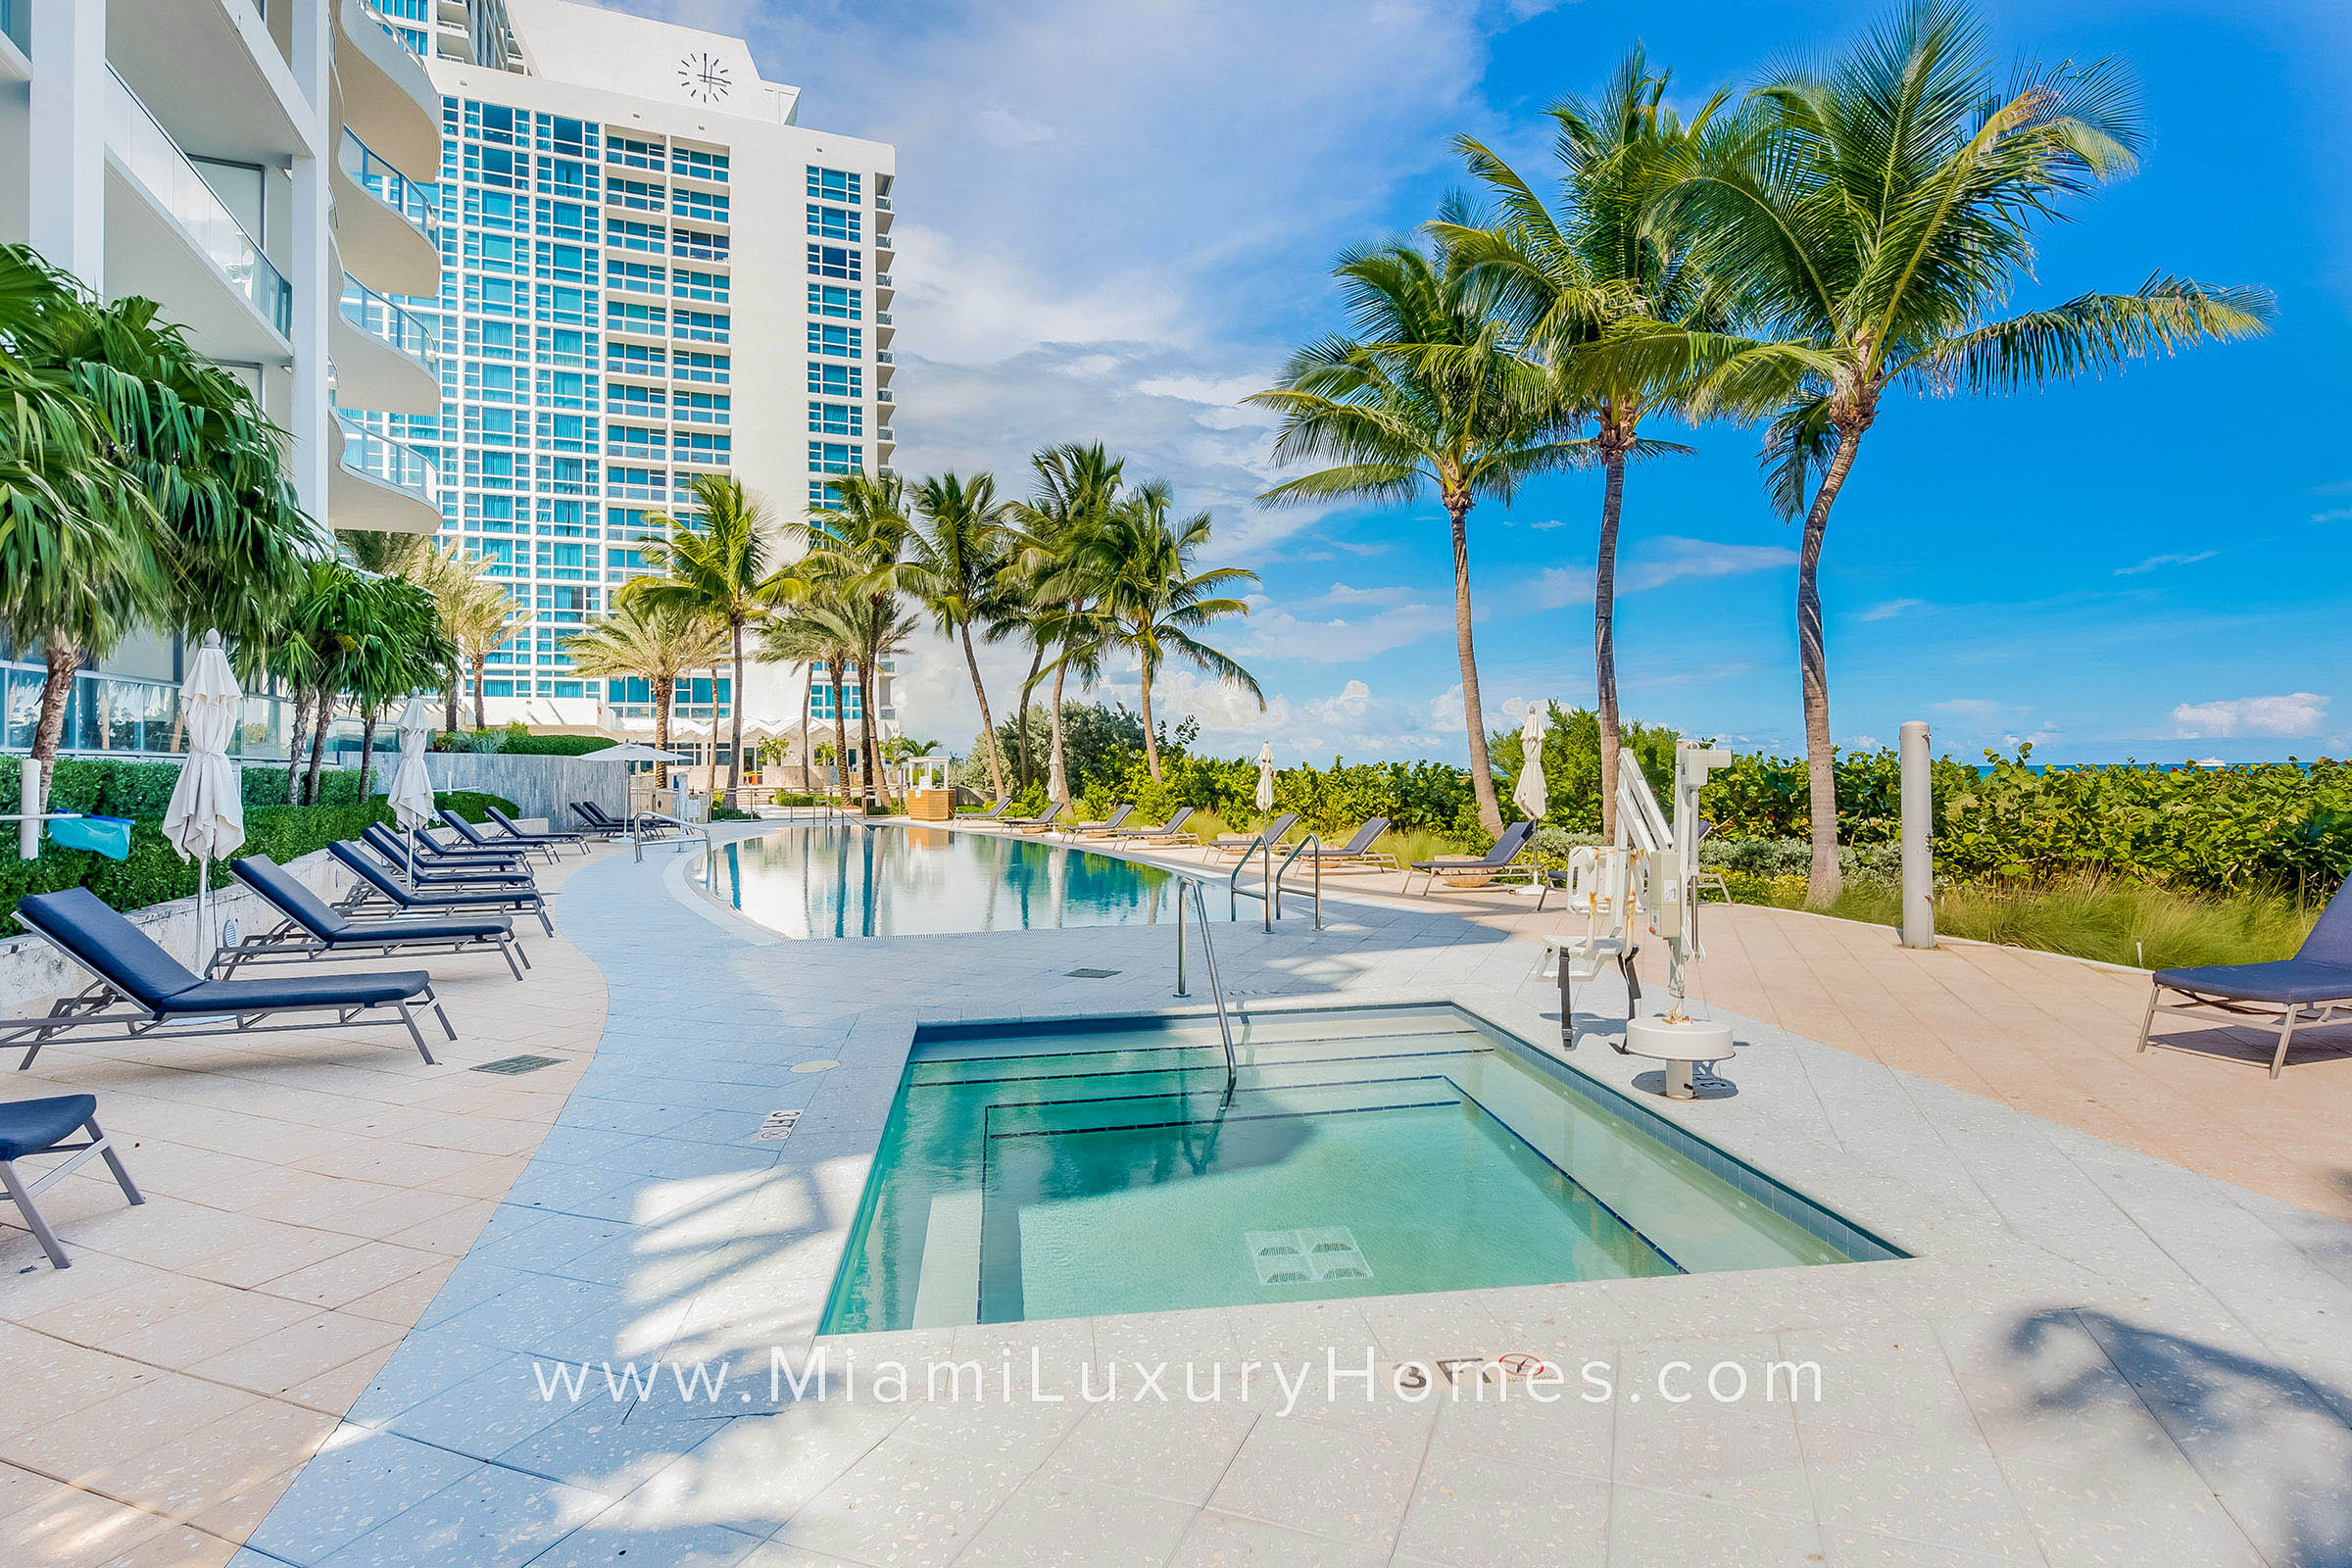 The Carillon Miami Beach Pool Deck